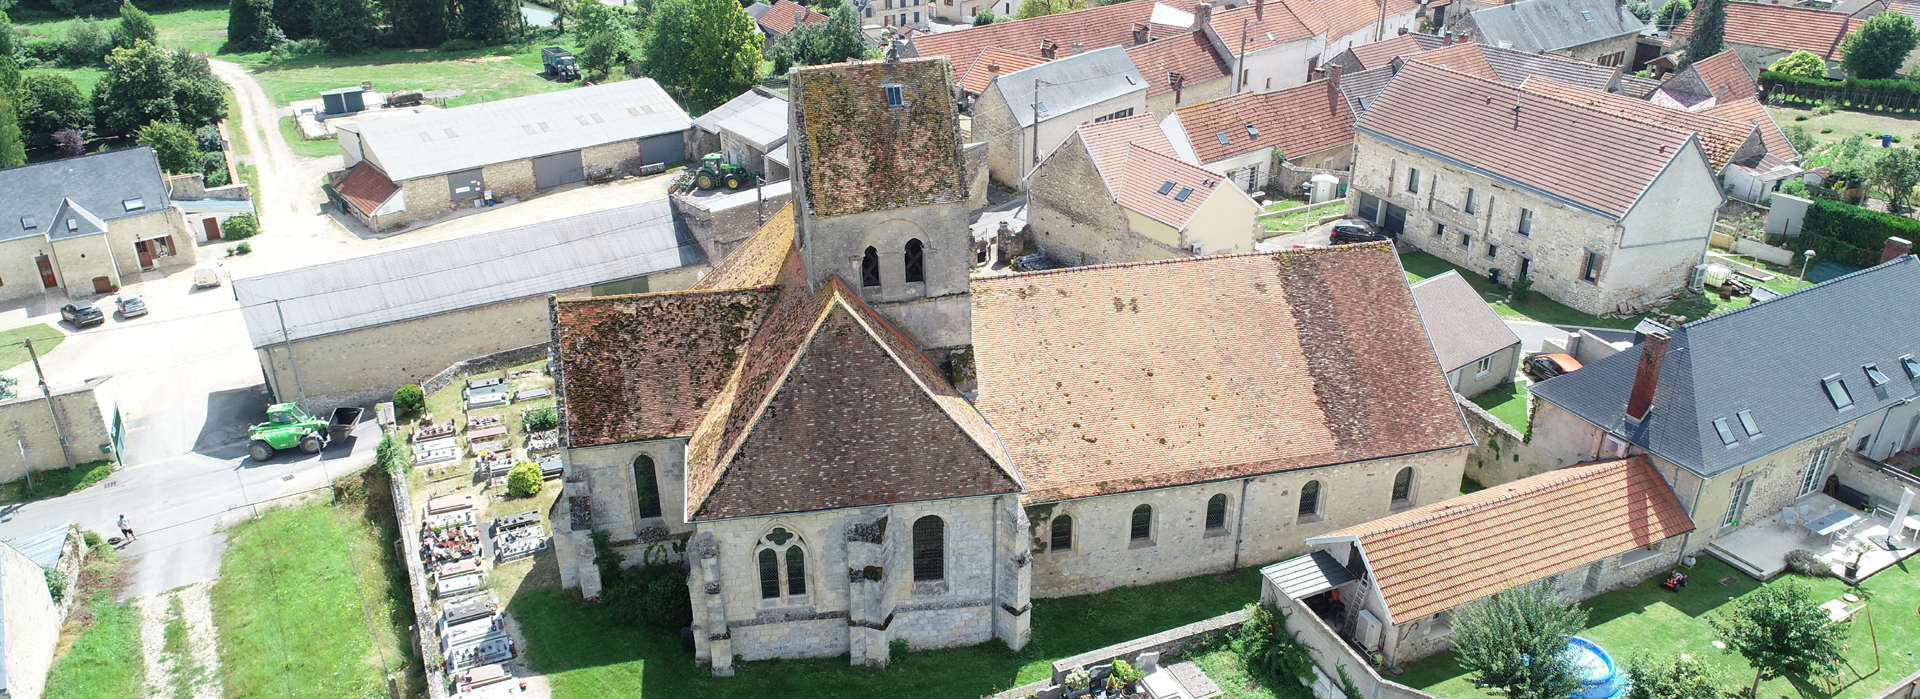 Eglise de Baslieux-les-Fismes vue du haut